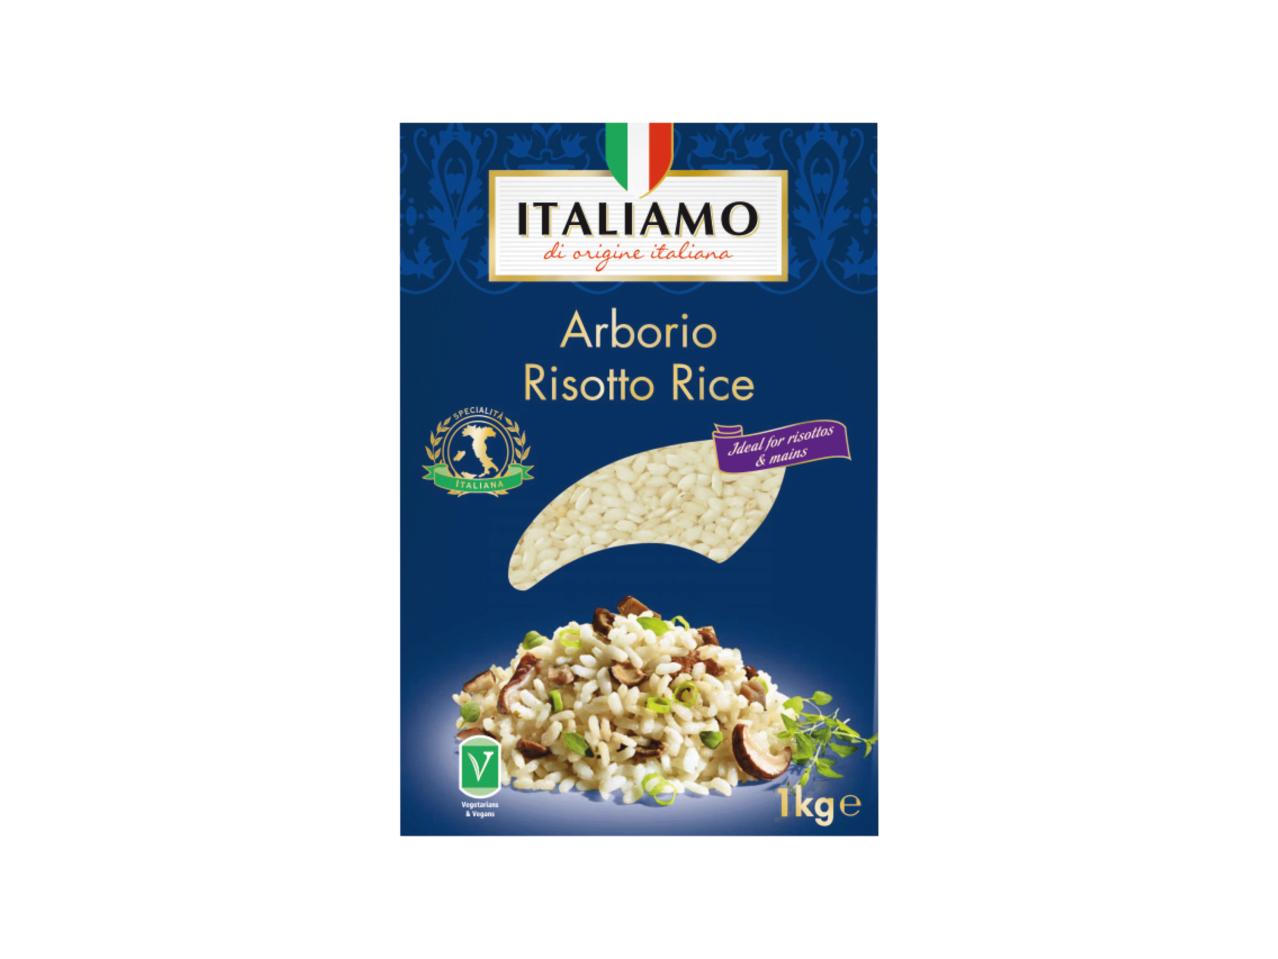 ITALIAMO Arborio Risotto Rice